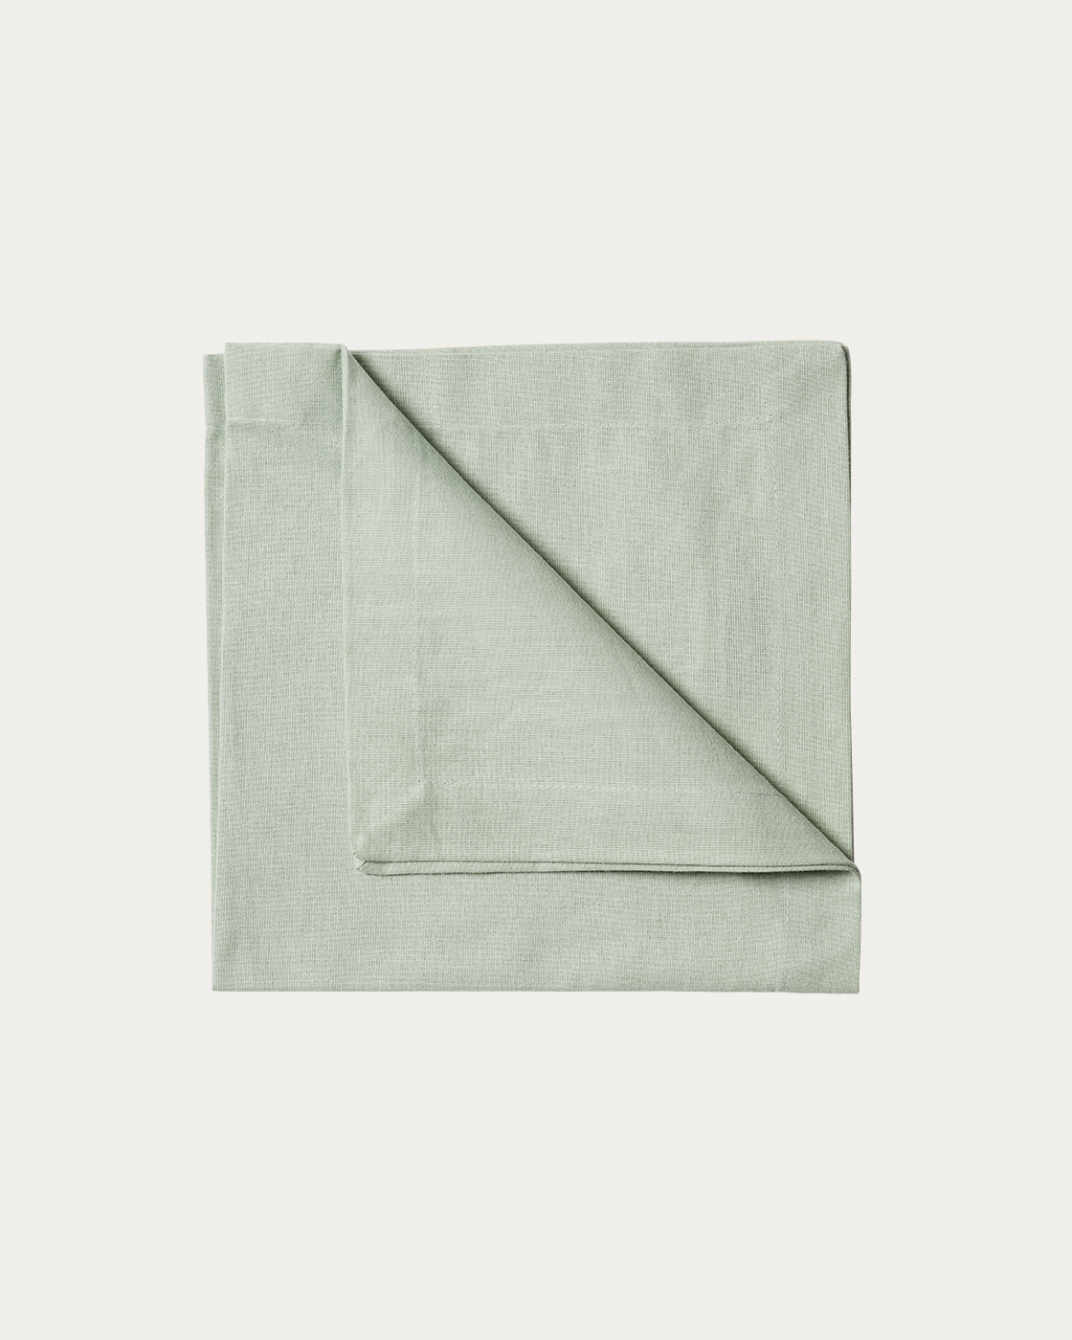 Produktbild helles eisgrün ROBERT Serviette aus weicher Baumwolle von LINUM DESIGN. Größe 45x45 cm und in 4er-Pack verkauft.